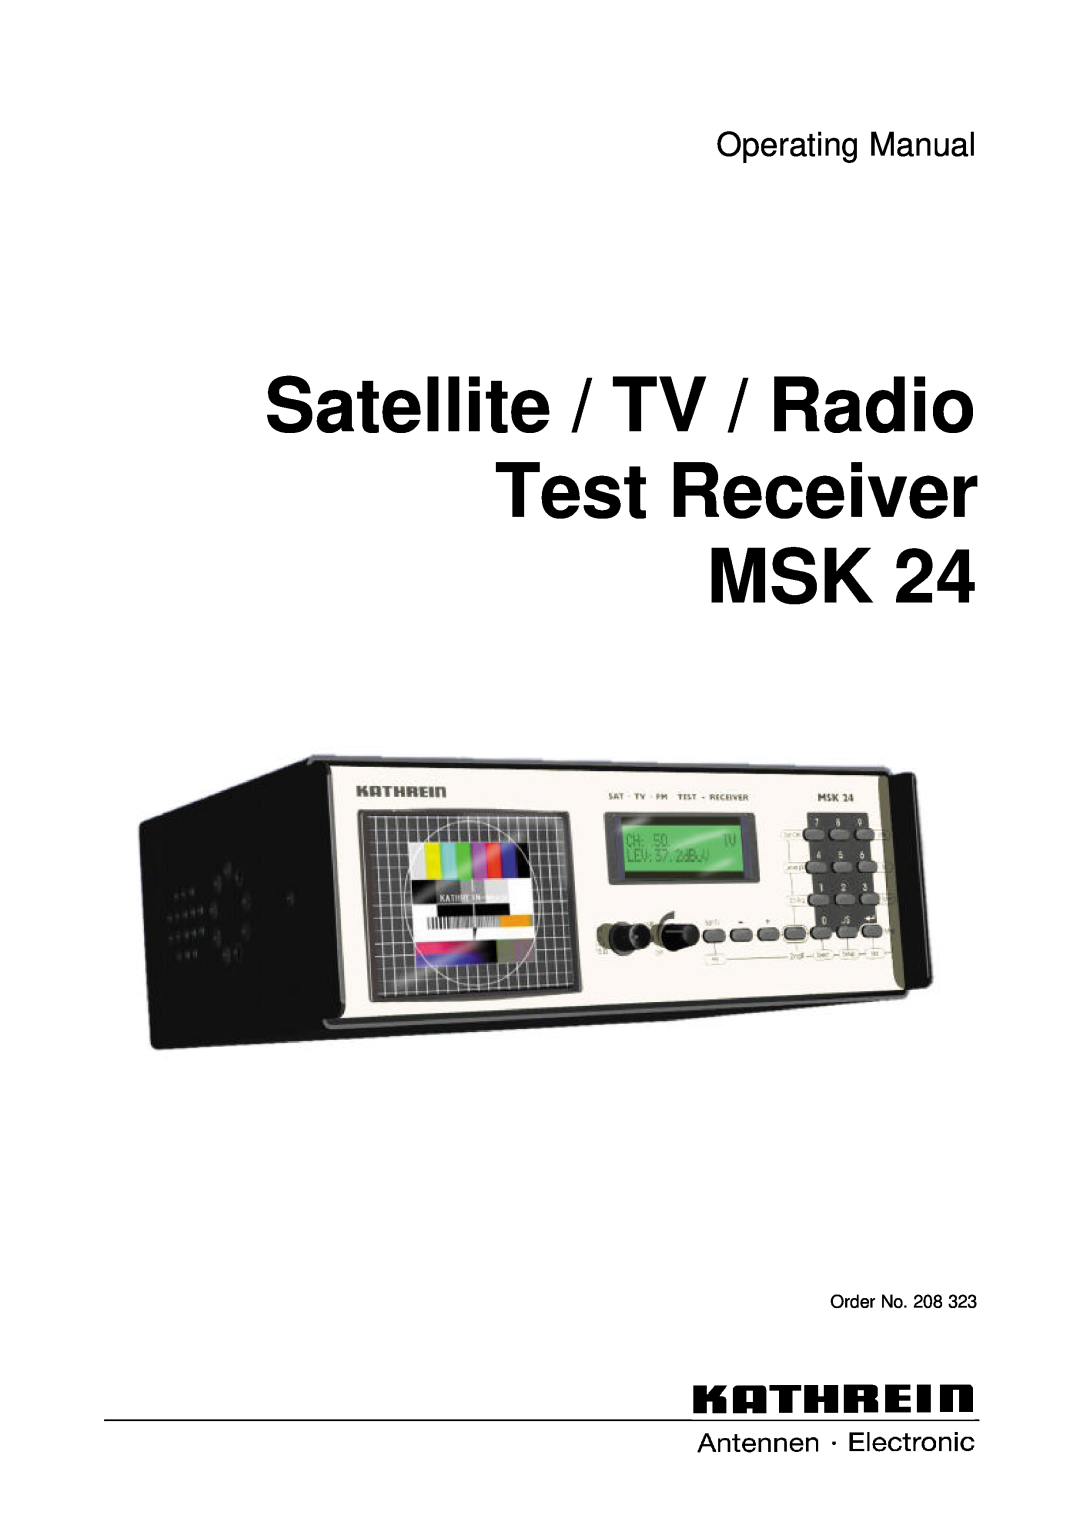 Kathrein MSK 24 manual Satellite / TV / Radio Test Receiver MSK, Operating Manual 